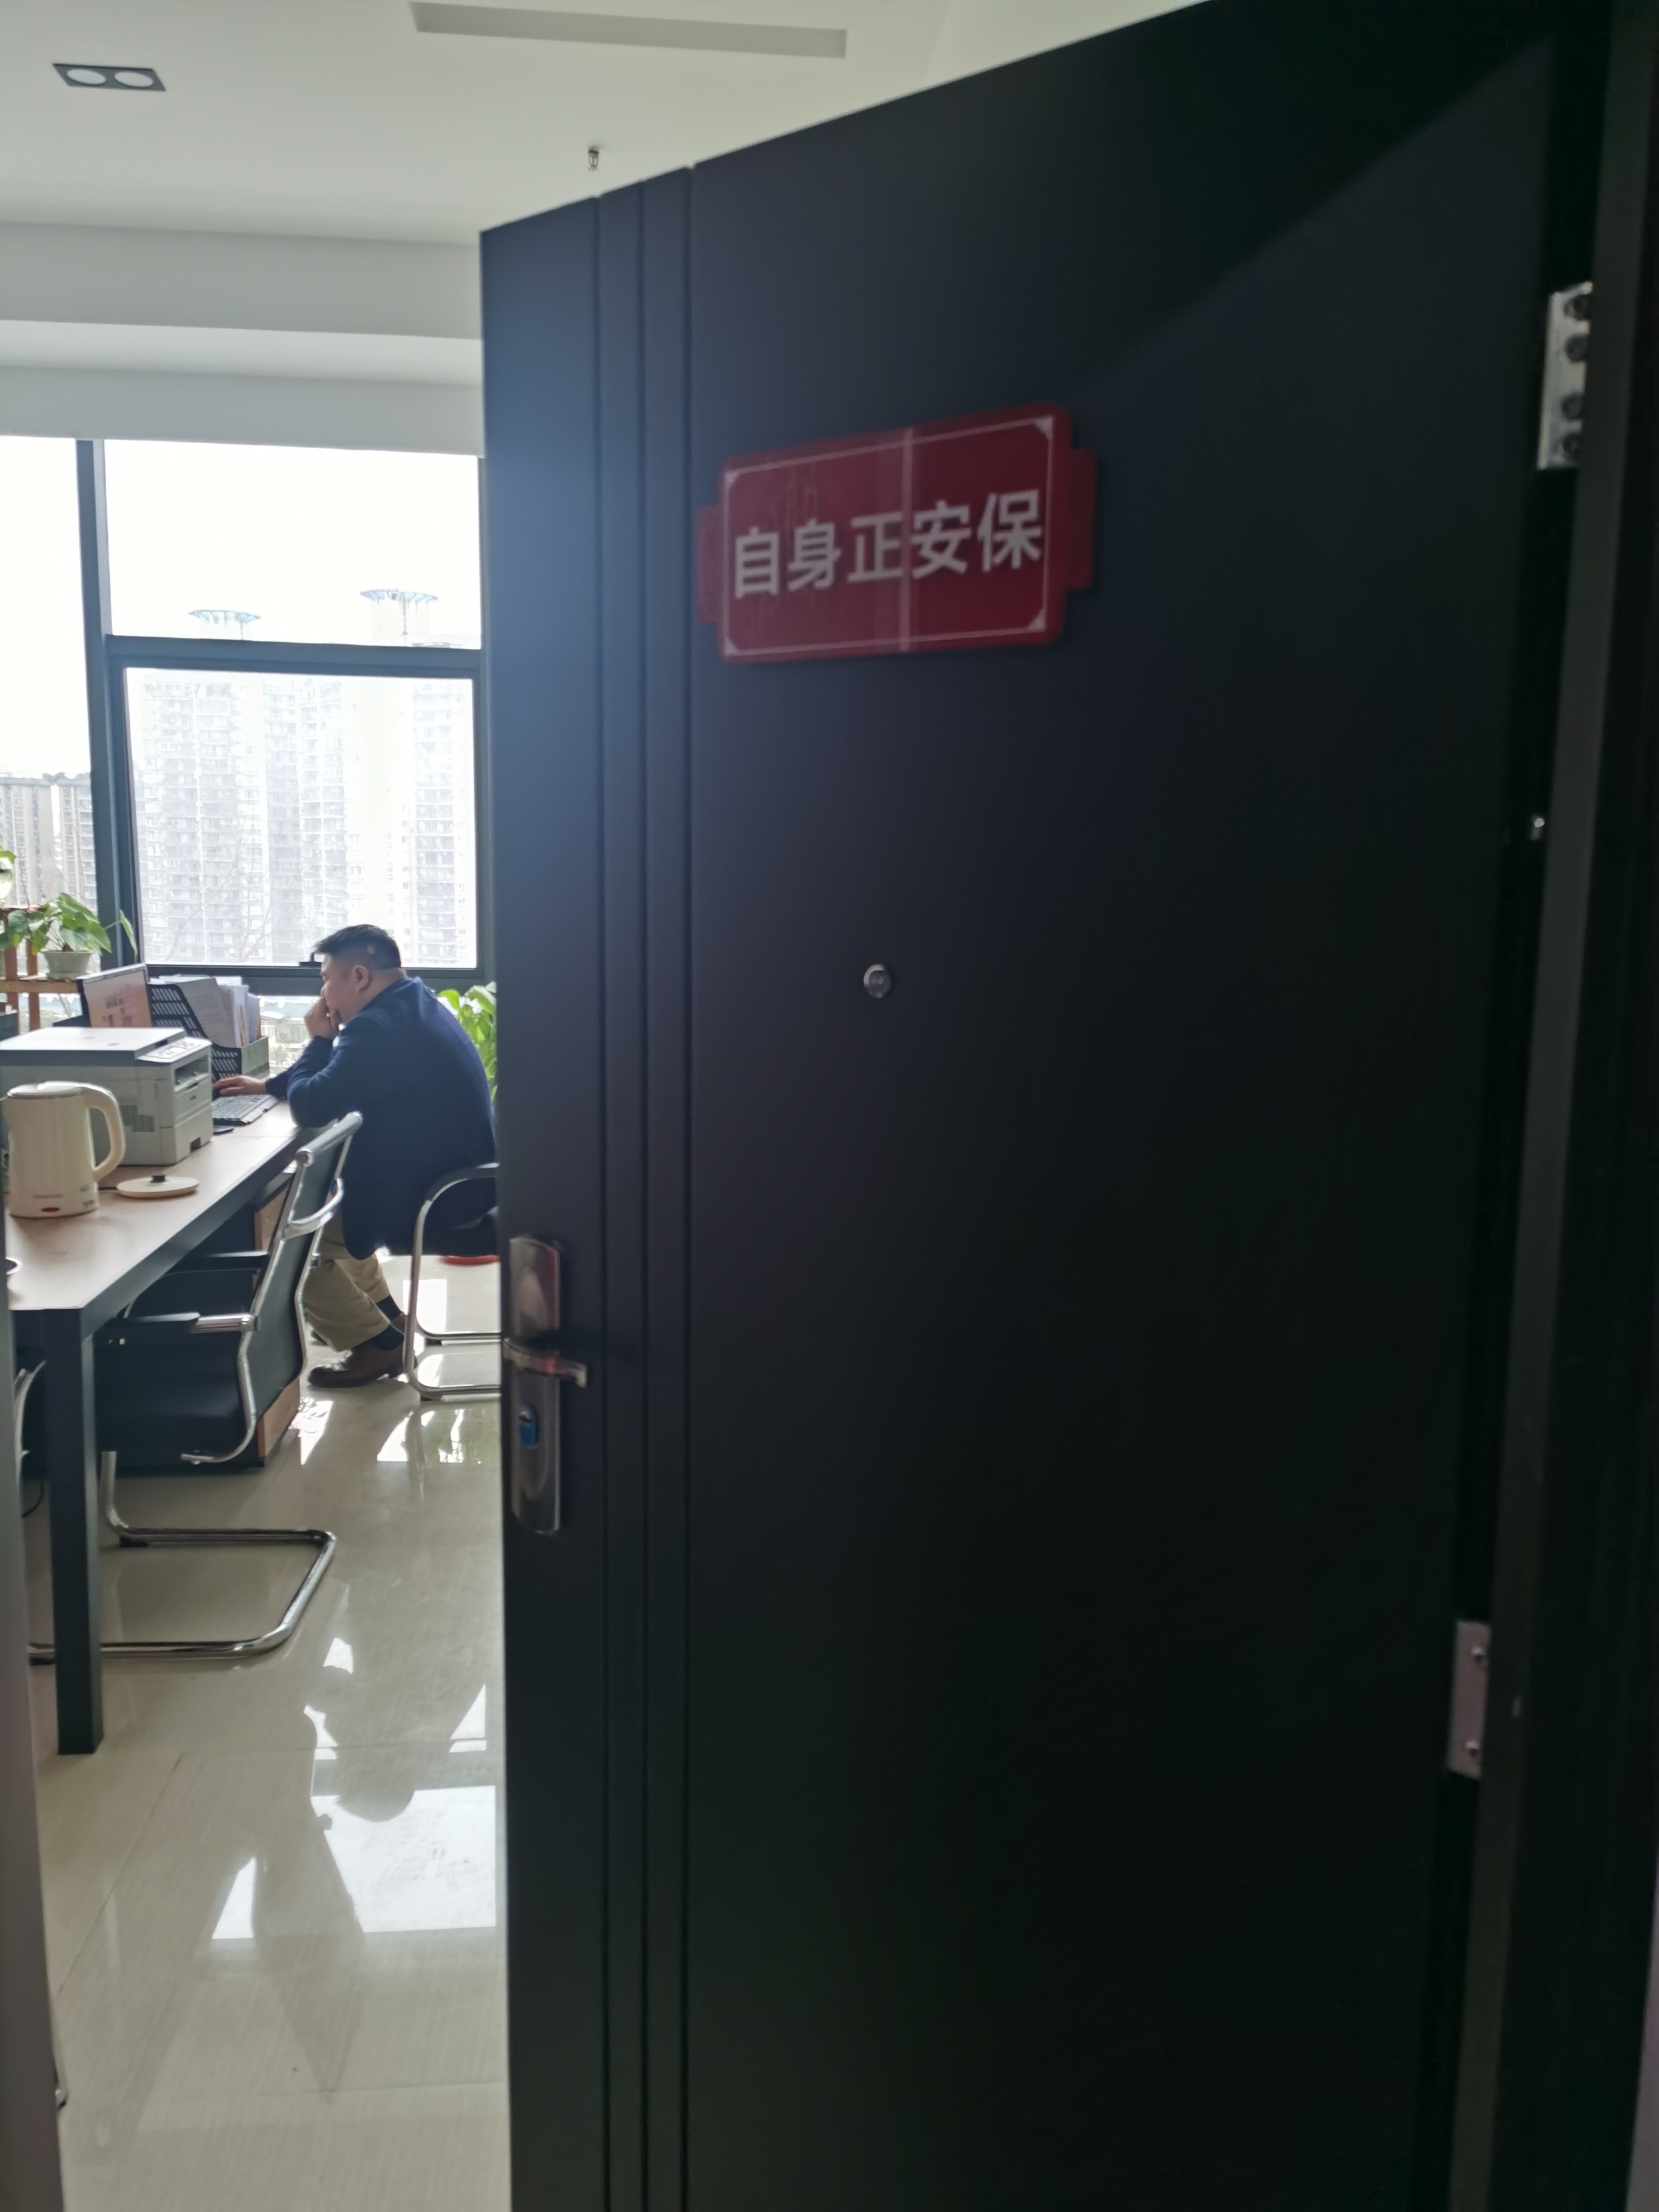 重庆市自身正保安服务有限公司 环境照片活动图片